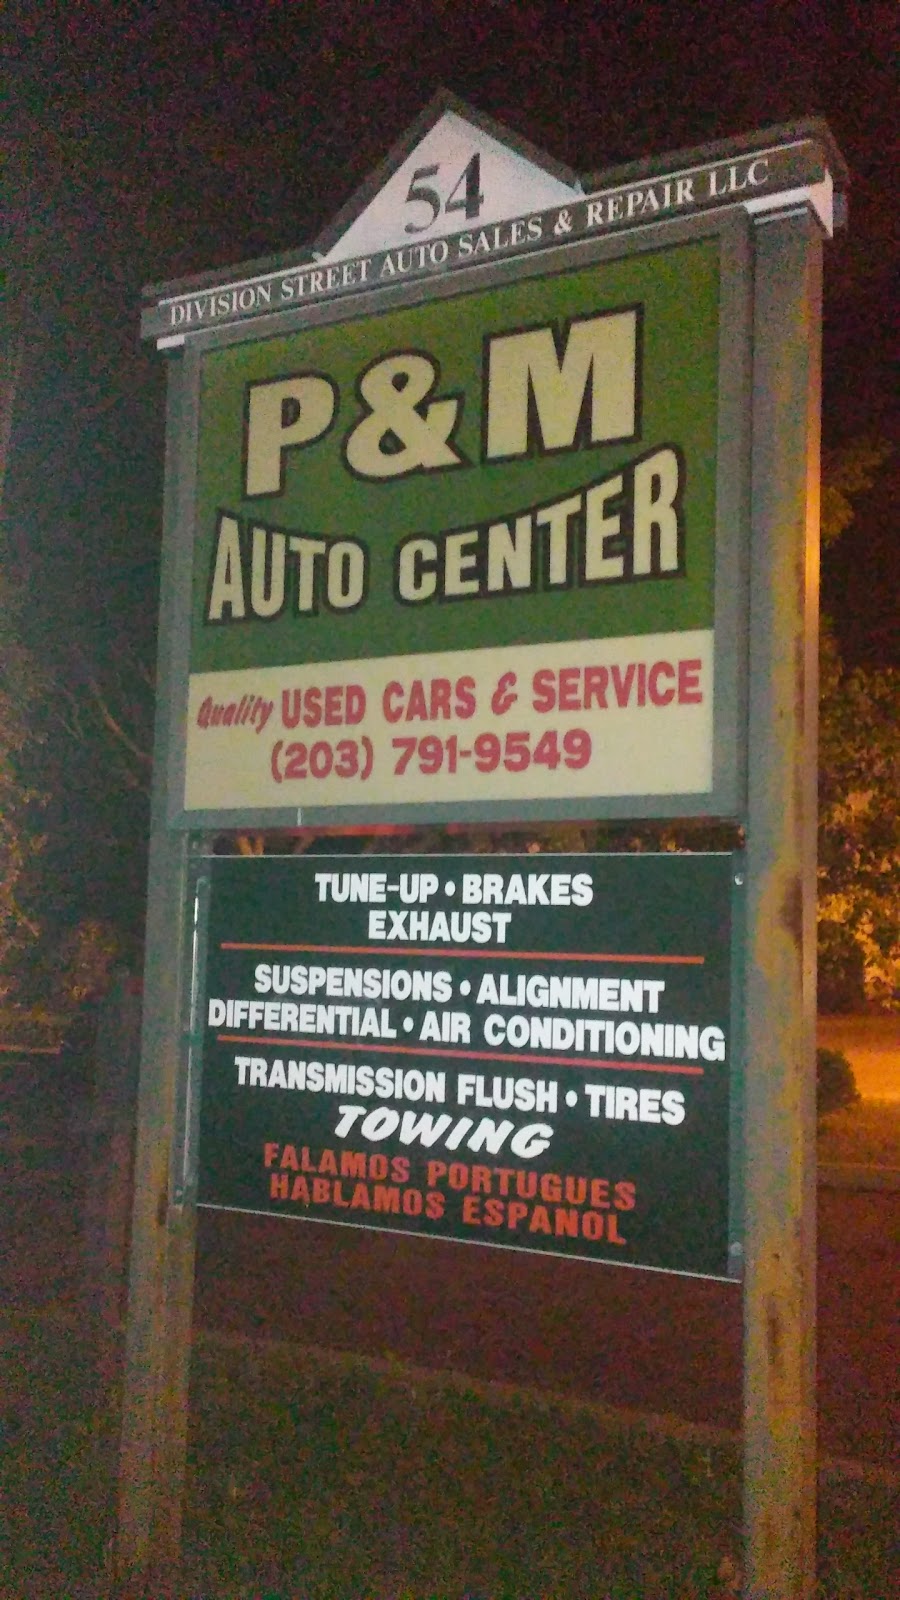 P & M Auto Repair | 54 Division St, Danbury, CT 06810 | Phone: (203) 791-9549